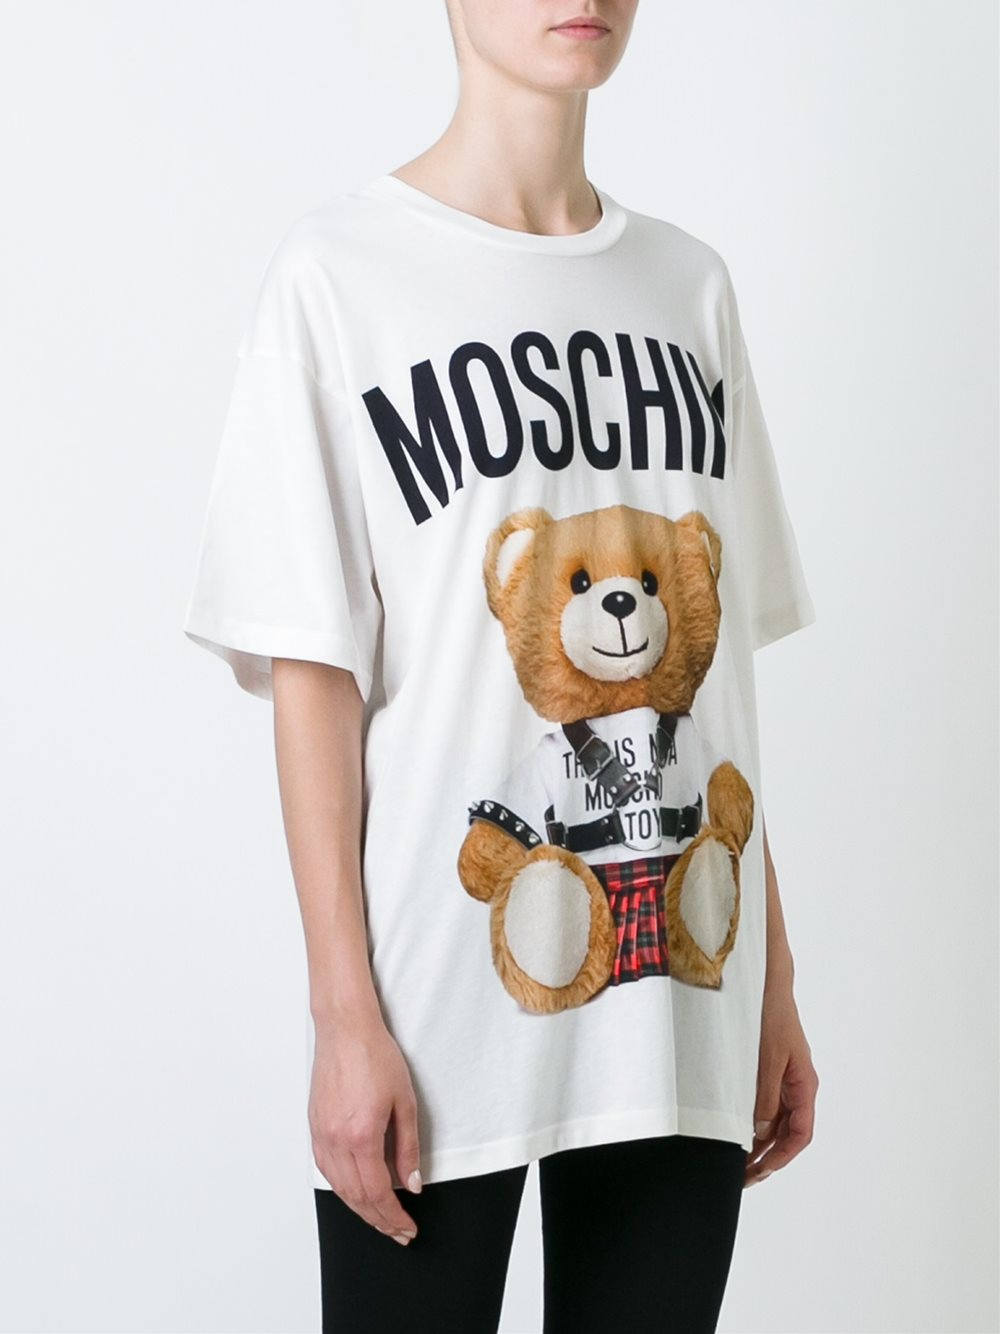 Moschino t shirt womens teddy bear online